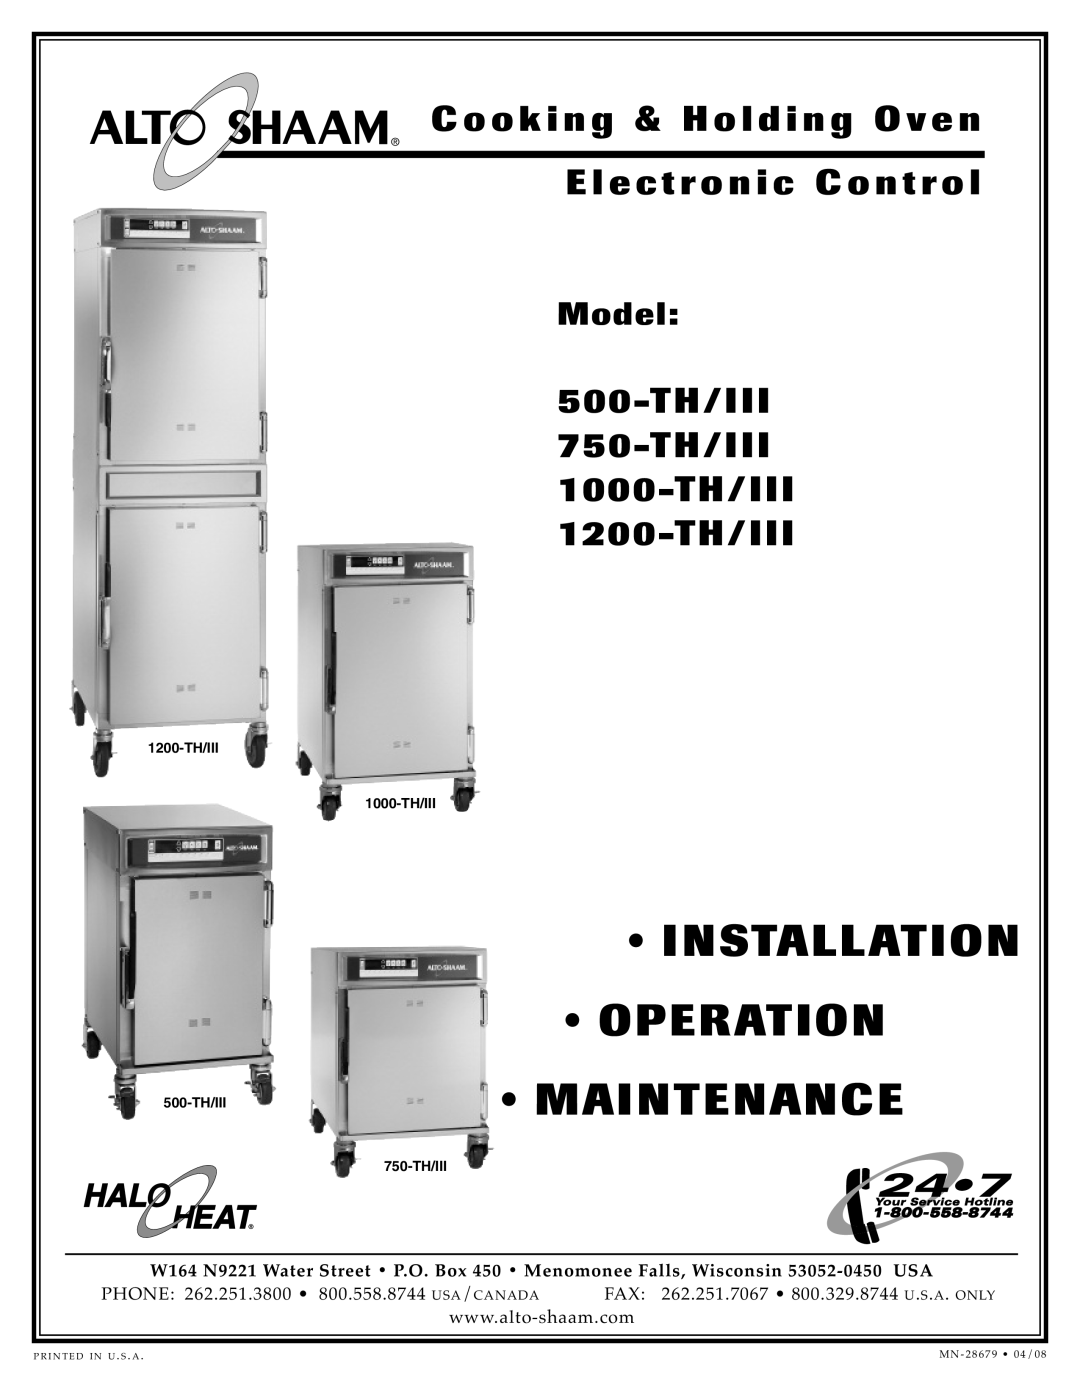 Alto-Shaam 500-TH/III manual Installation, Betrieb, Wartung, 750-TH/III, 1000-TH/III, 1200-TH/III, Back- und Warmhalteofen 